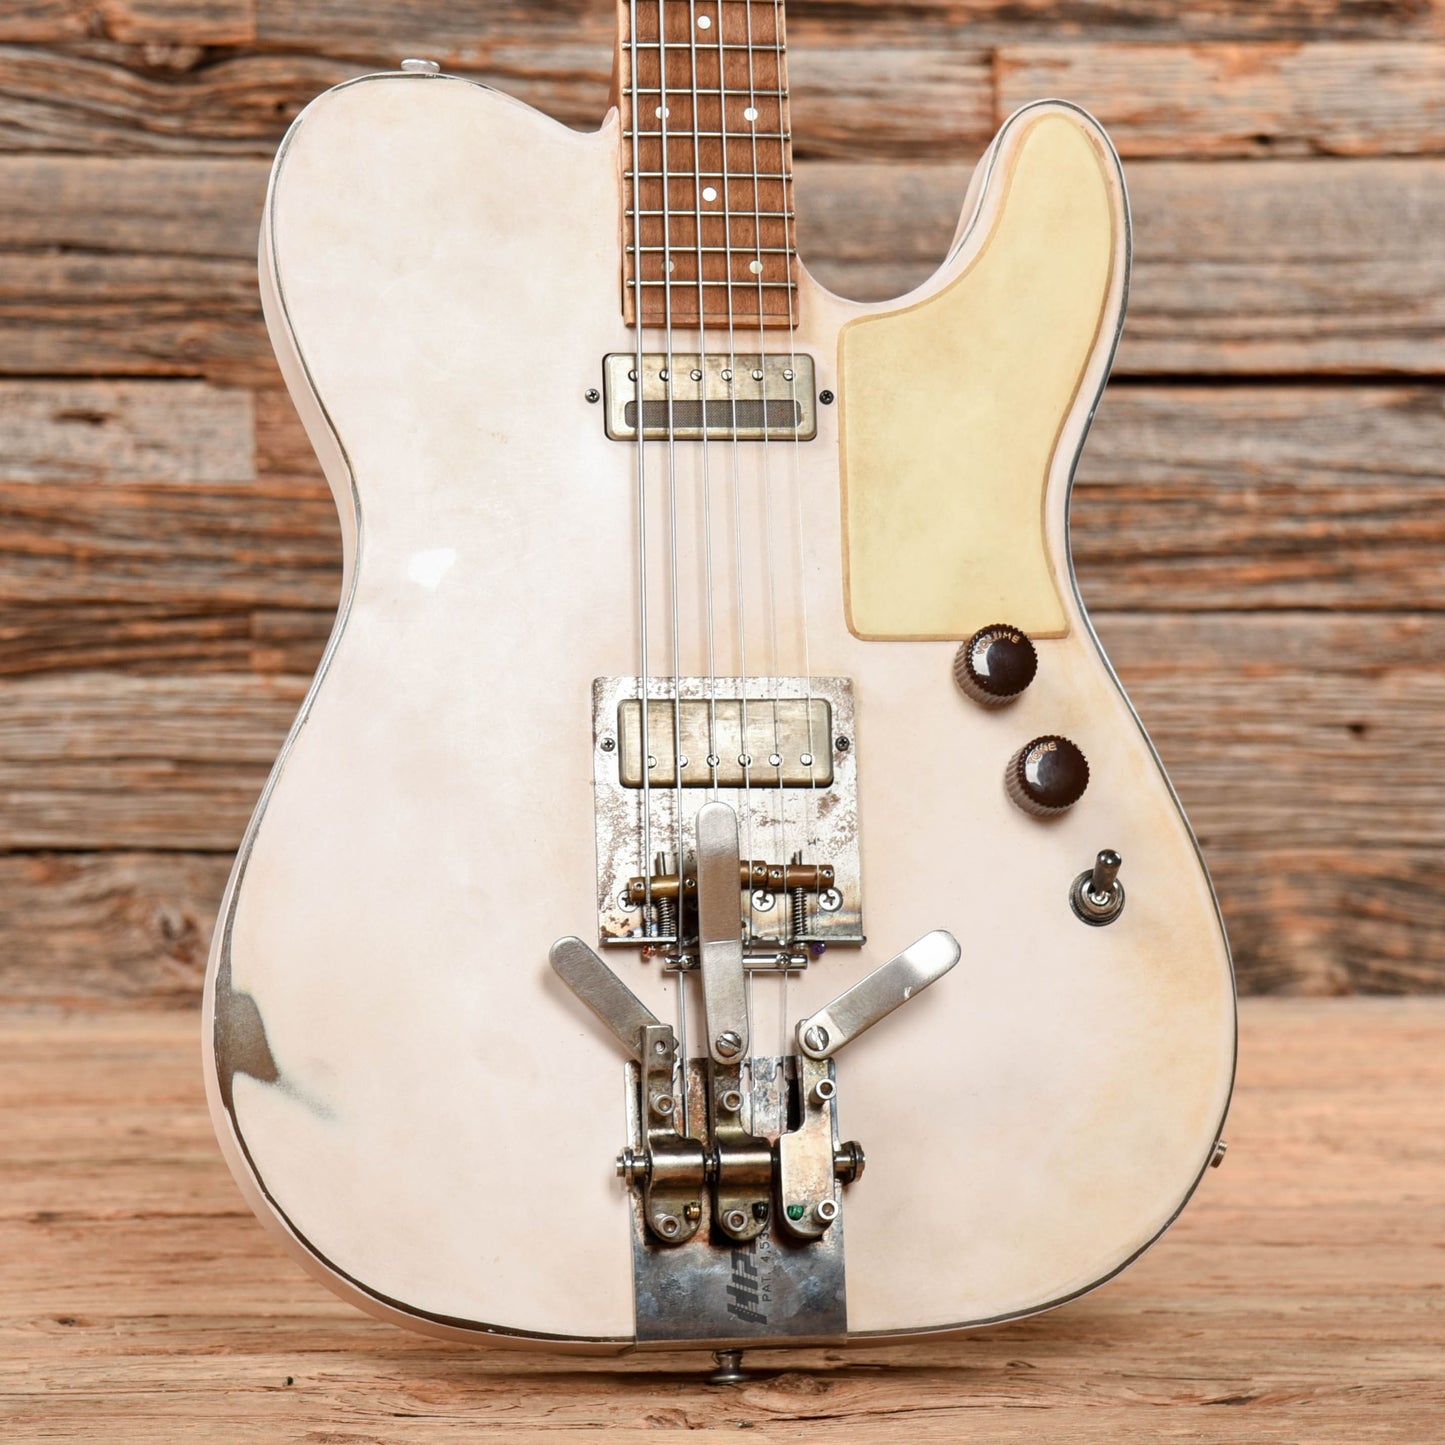 Mule Mulecaster White Electric Guitars / Semi-Hollow